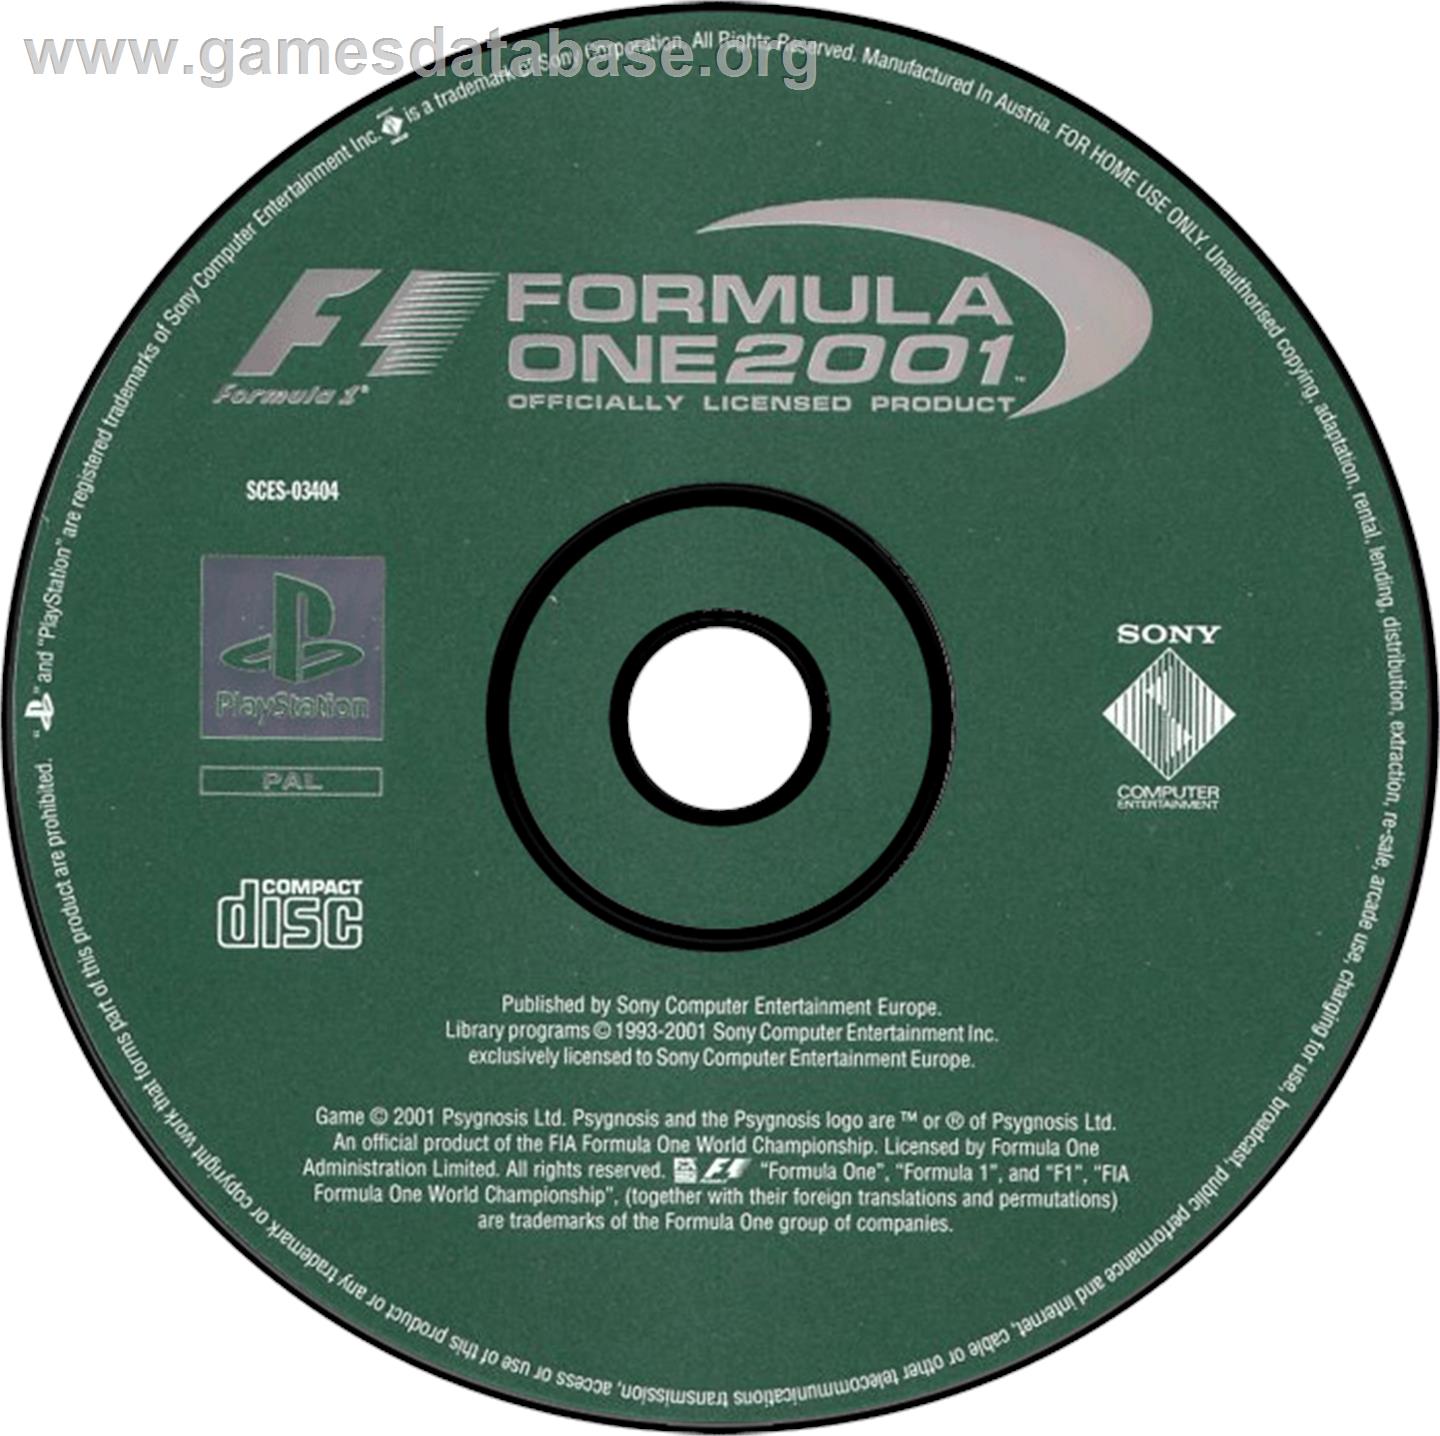 Formula One 2001 - Sony Playstation - Artwork - Disc